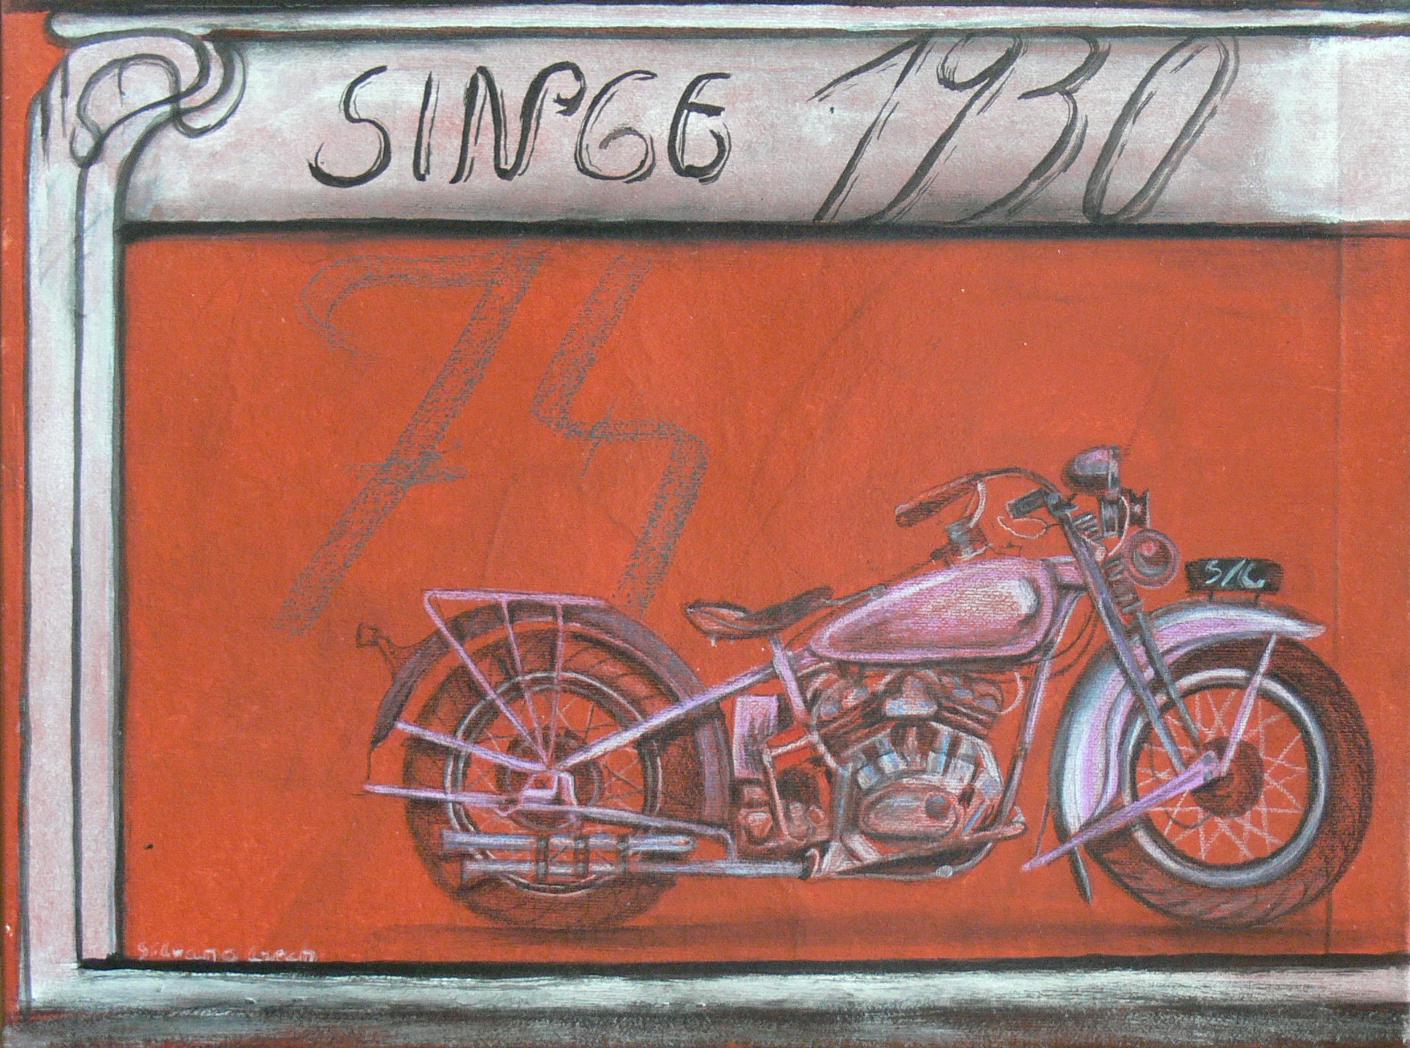 silvana czech: Motorradbild einer Harley 74 1930 Harley 74 1930 aus der Bilderserie Chromwelten by Silvana Czech Unikat Material: Michtechnik auf Leinwand auf Keilrahmen Gr??e: 30 - 40 cm 